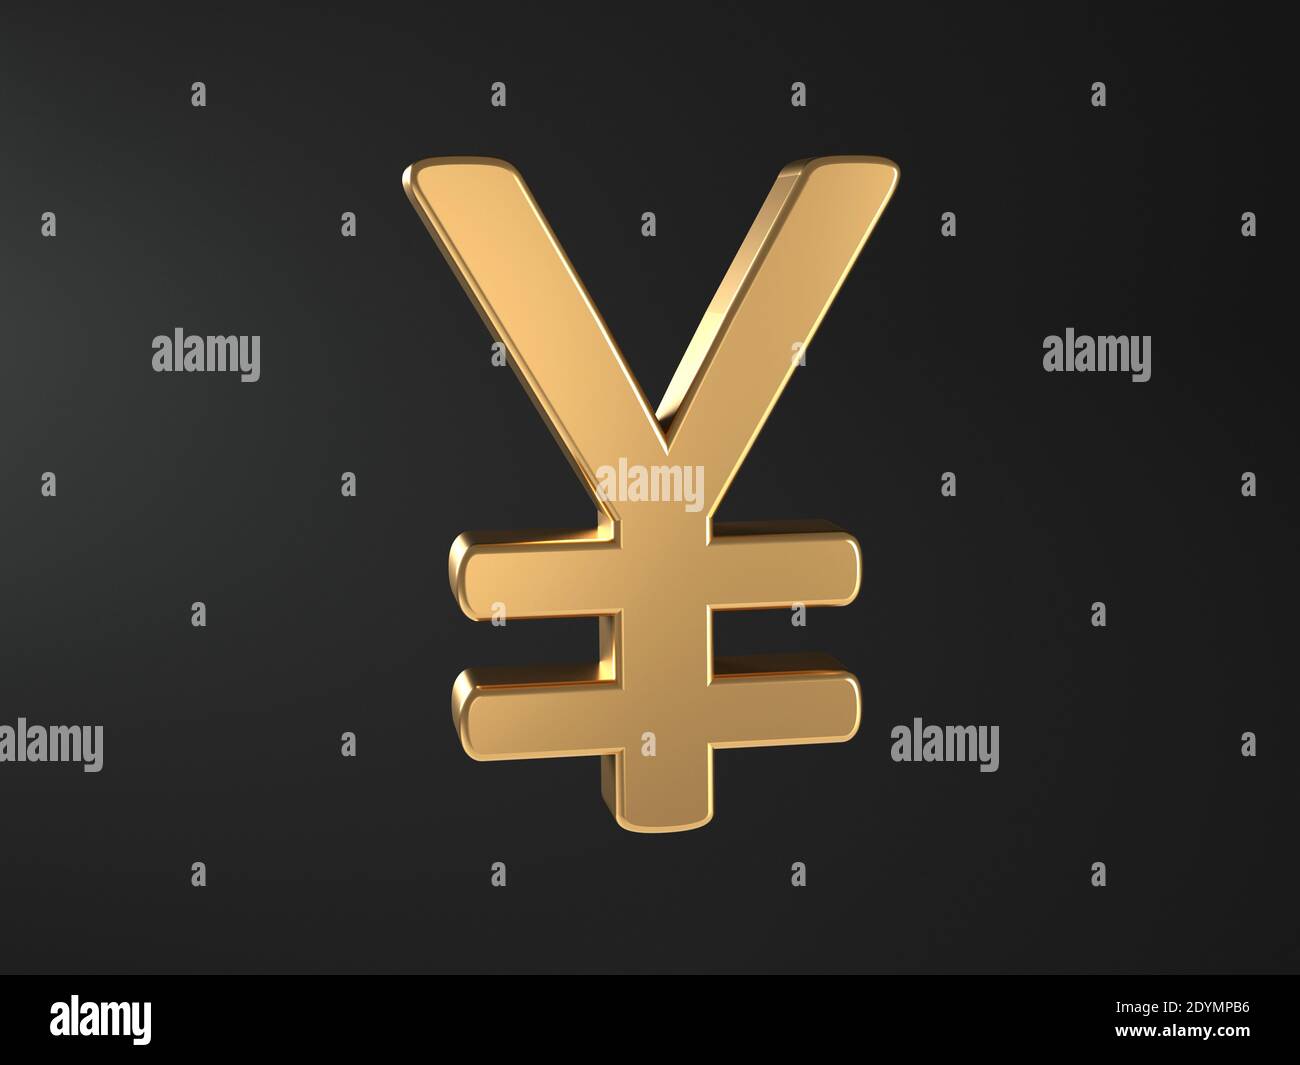 Symbole yen japonais - texte doré - devise japonaise - 3D علامة الين الياباني Banque D'Images